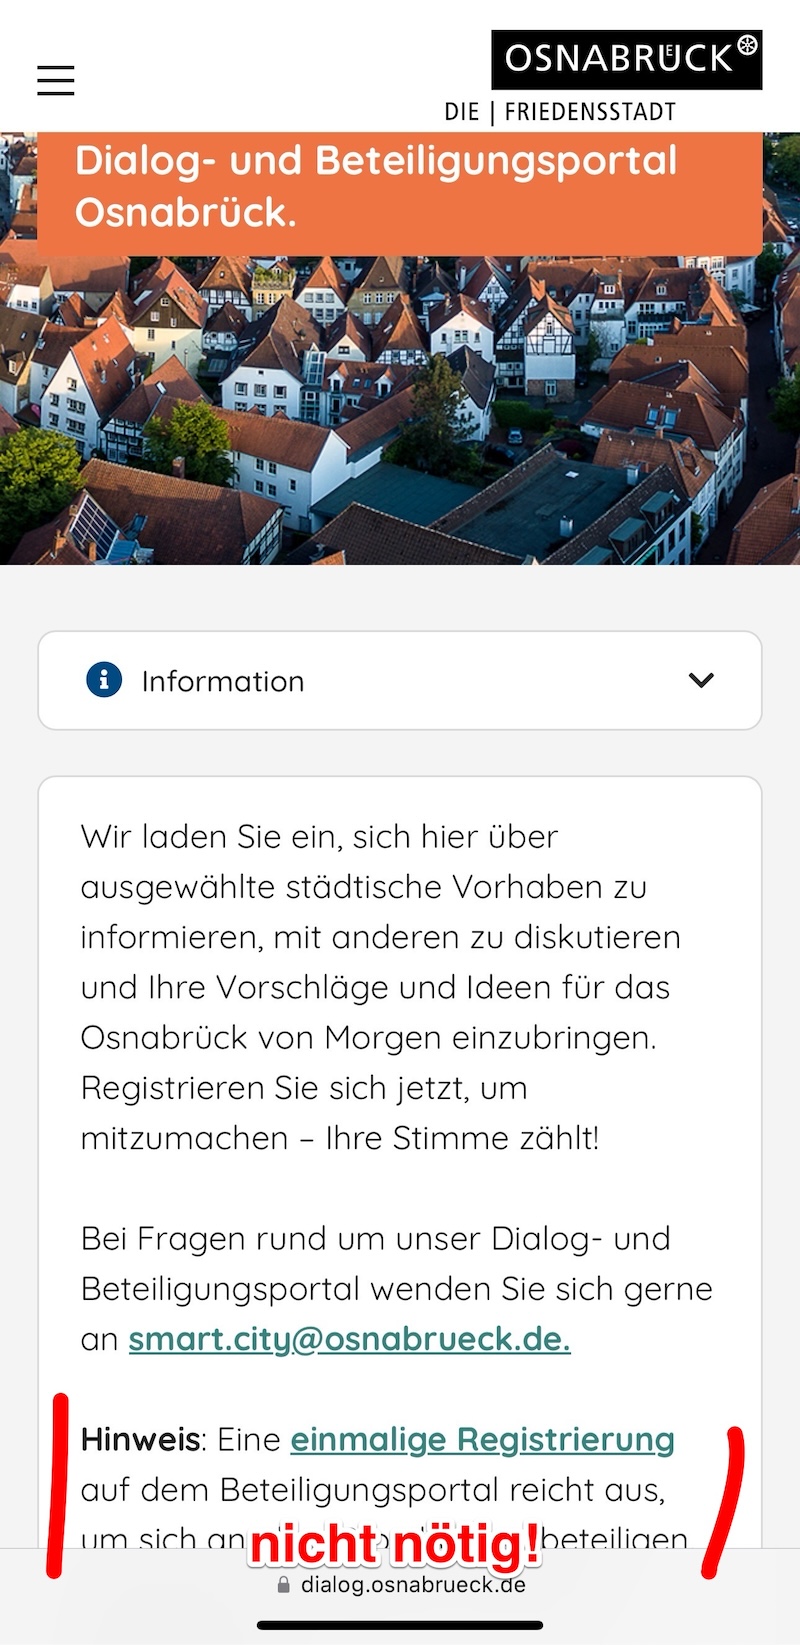 Betzeiligungsportal der Stadt Osnabrück (dialog.osnabrueck.de), eine Registrierung ist, anders als angezeigt, nicht notwendig.